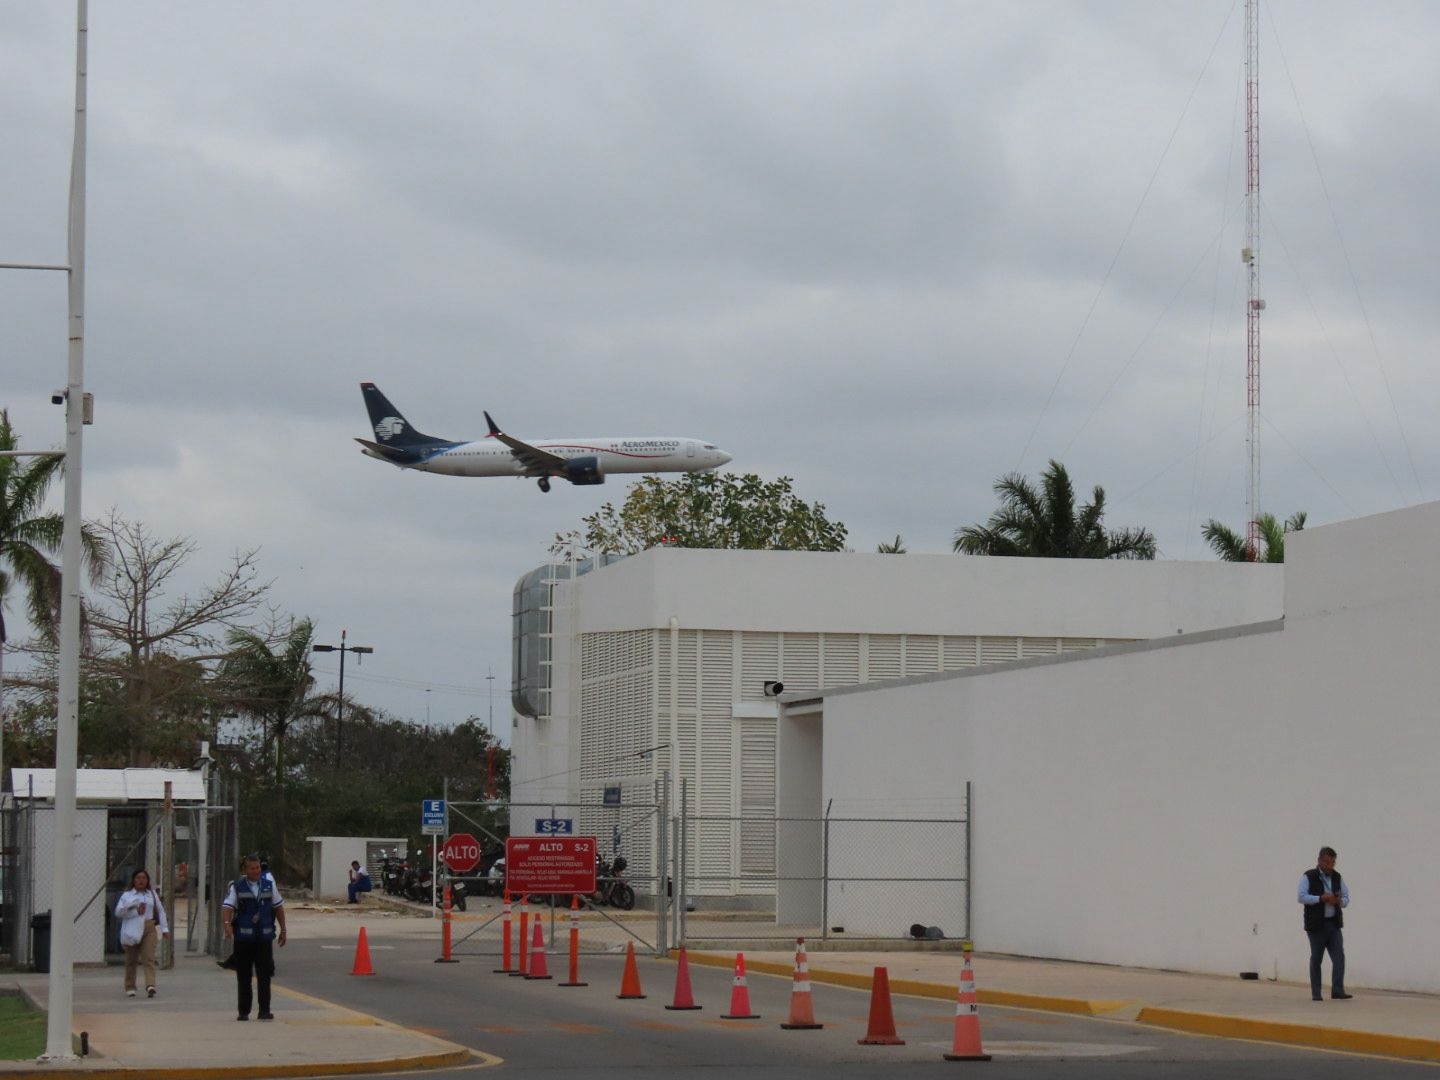 El aeropuerto de Mérida opera con más vuelos adelantados que retrasados